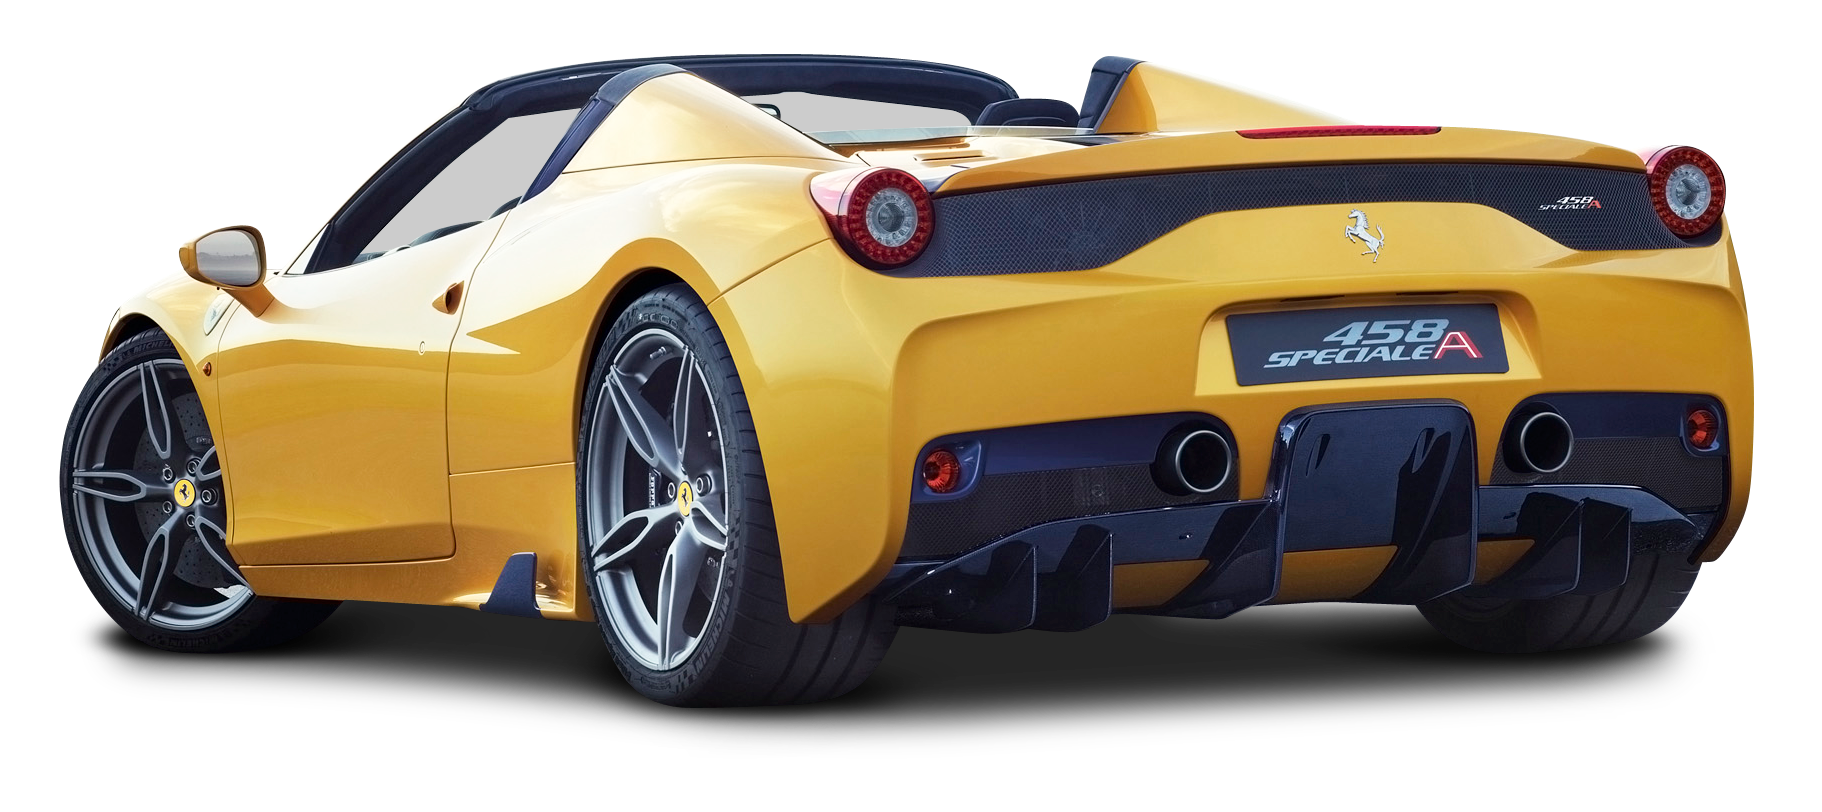 Ferrari 458 Speciale Aperta Yellow Car PNG Image